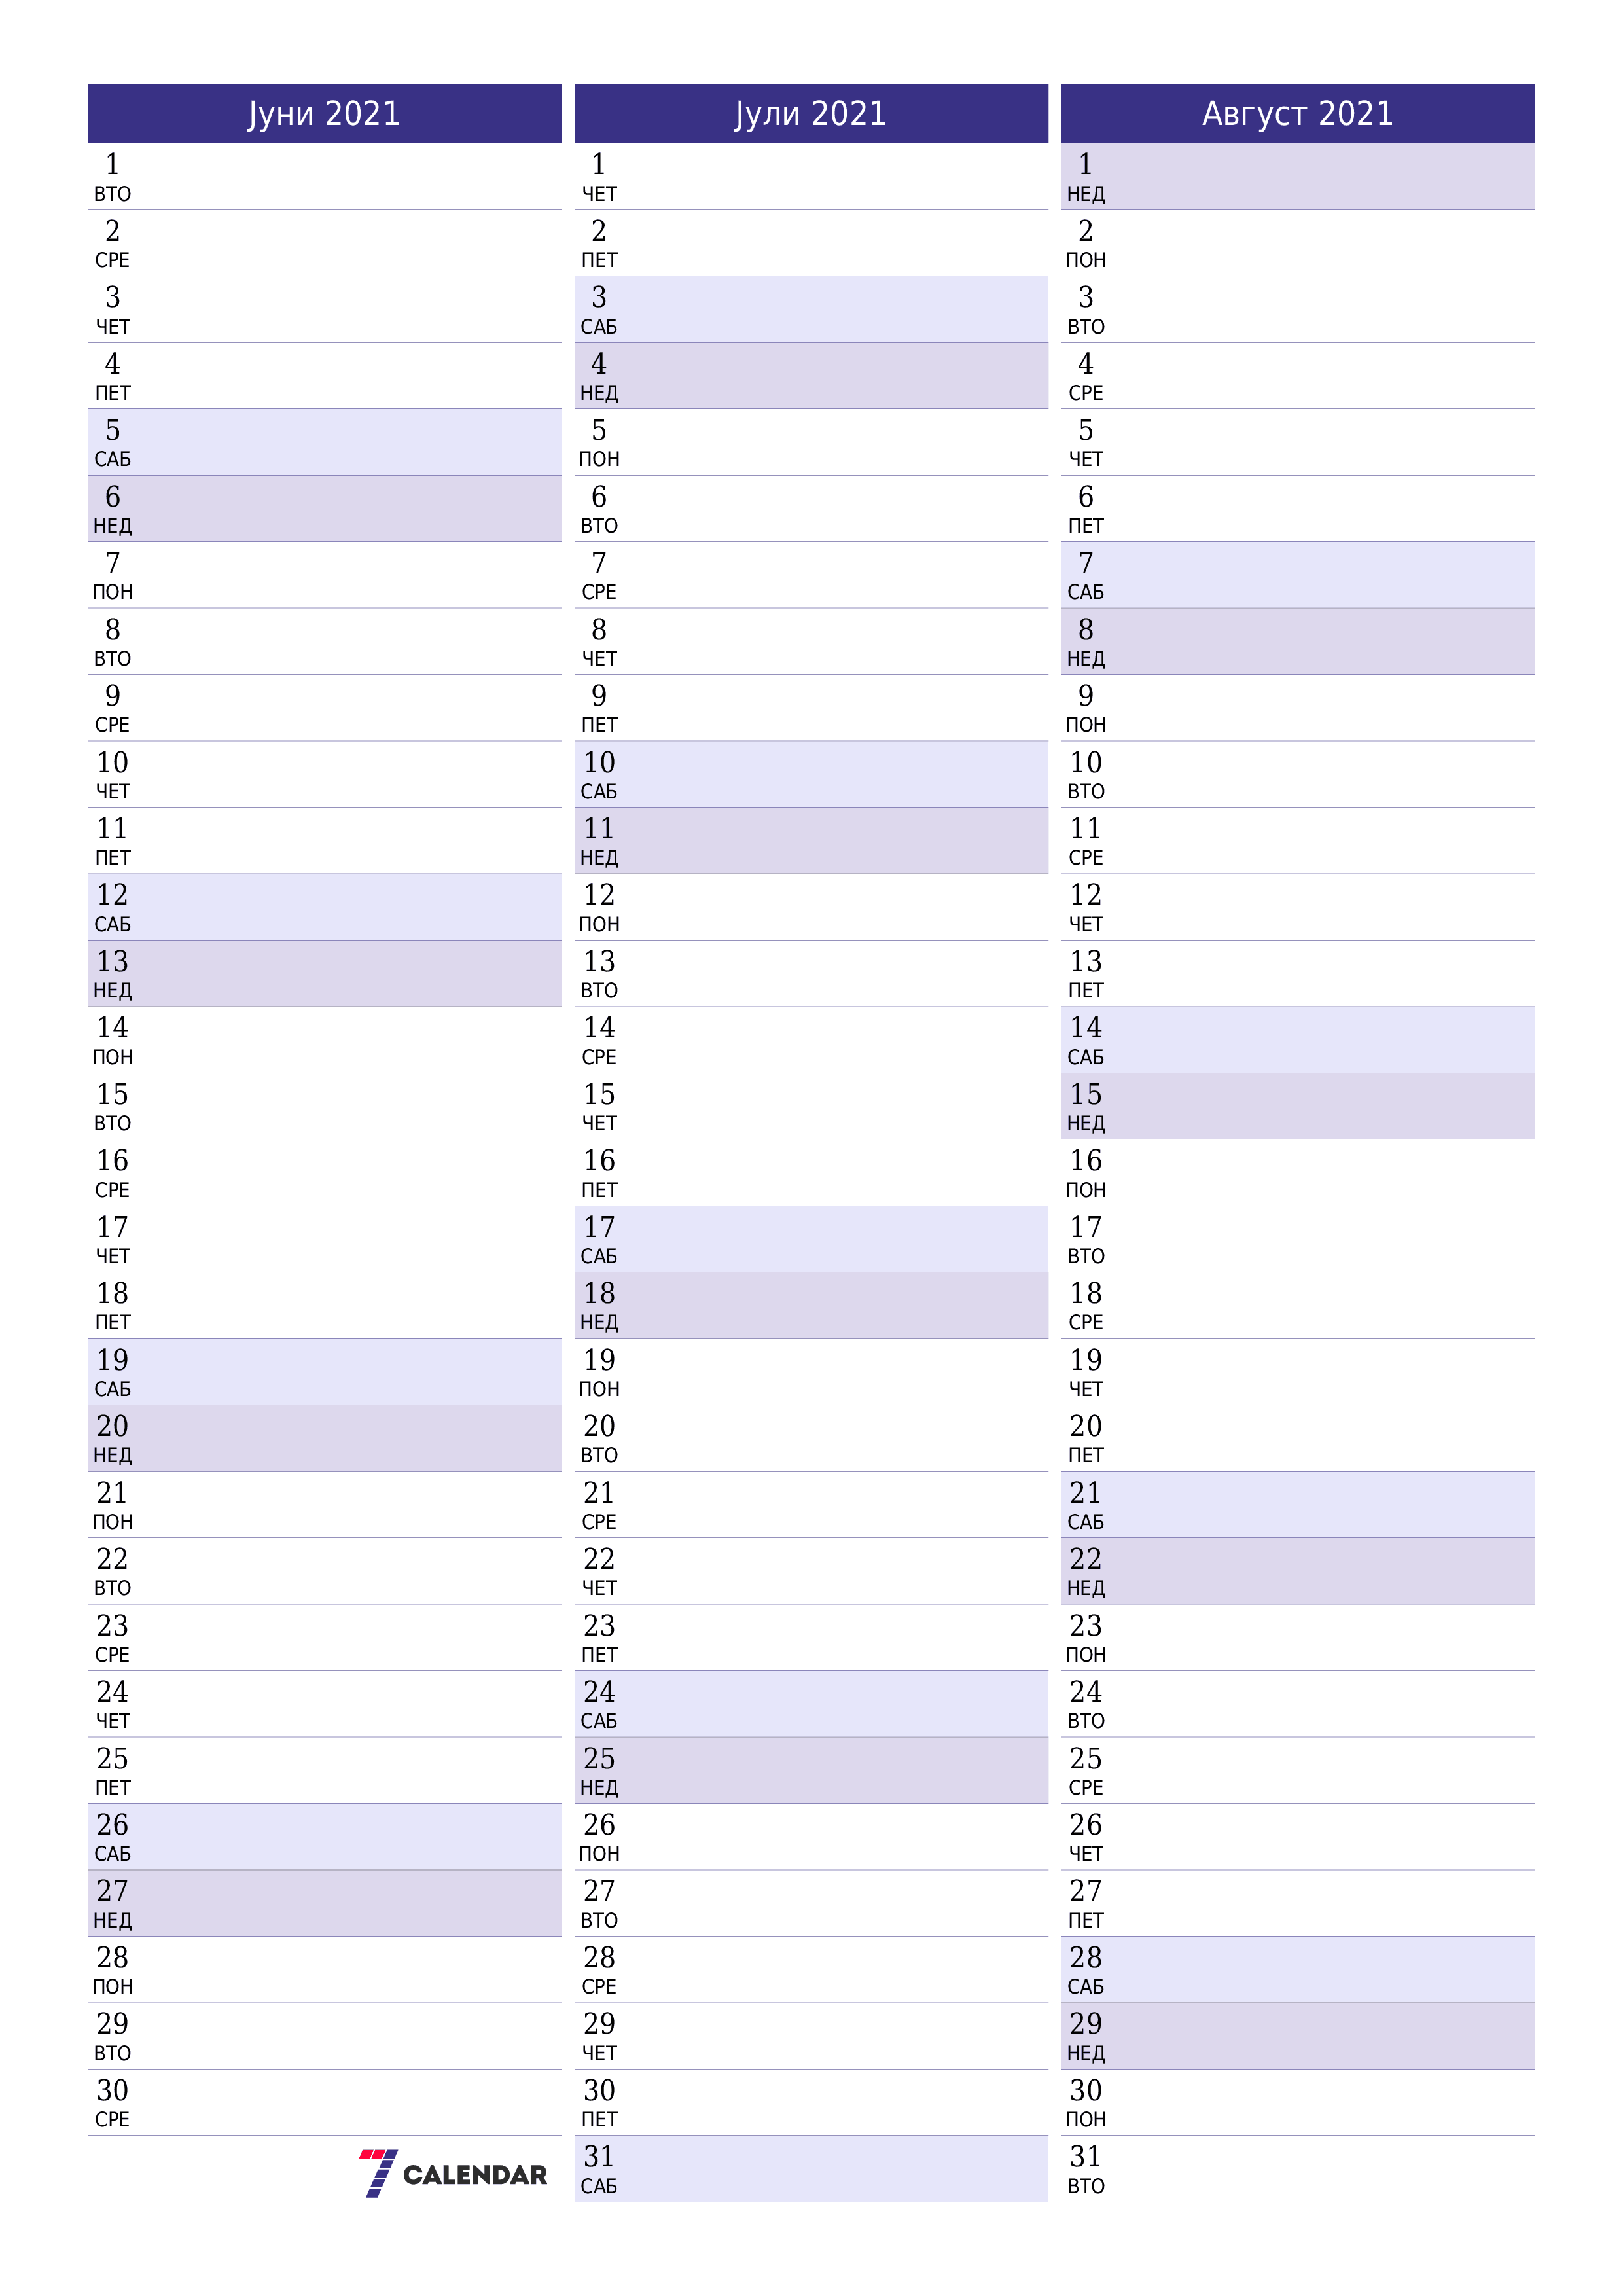 Празен месечен календарски планер за месец Јуни 2021 со белешки зачувани и печатени во PDF PNG Macedonian